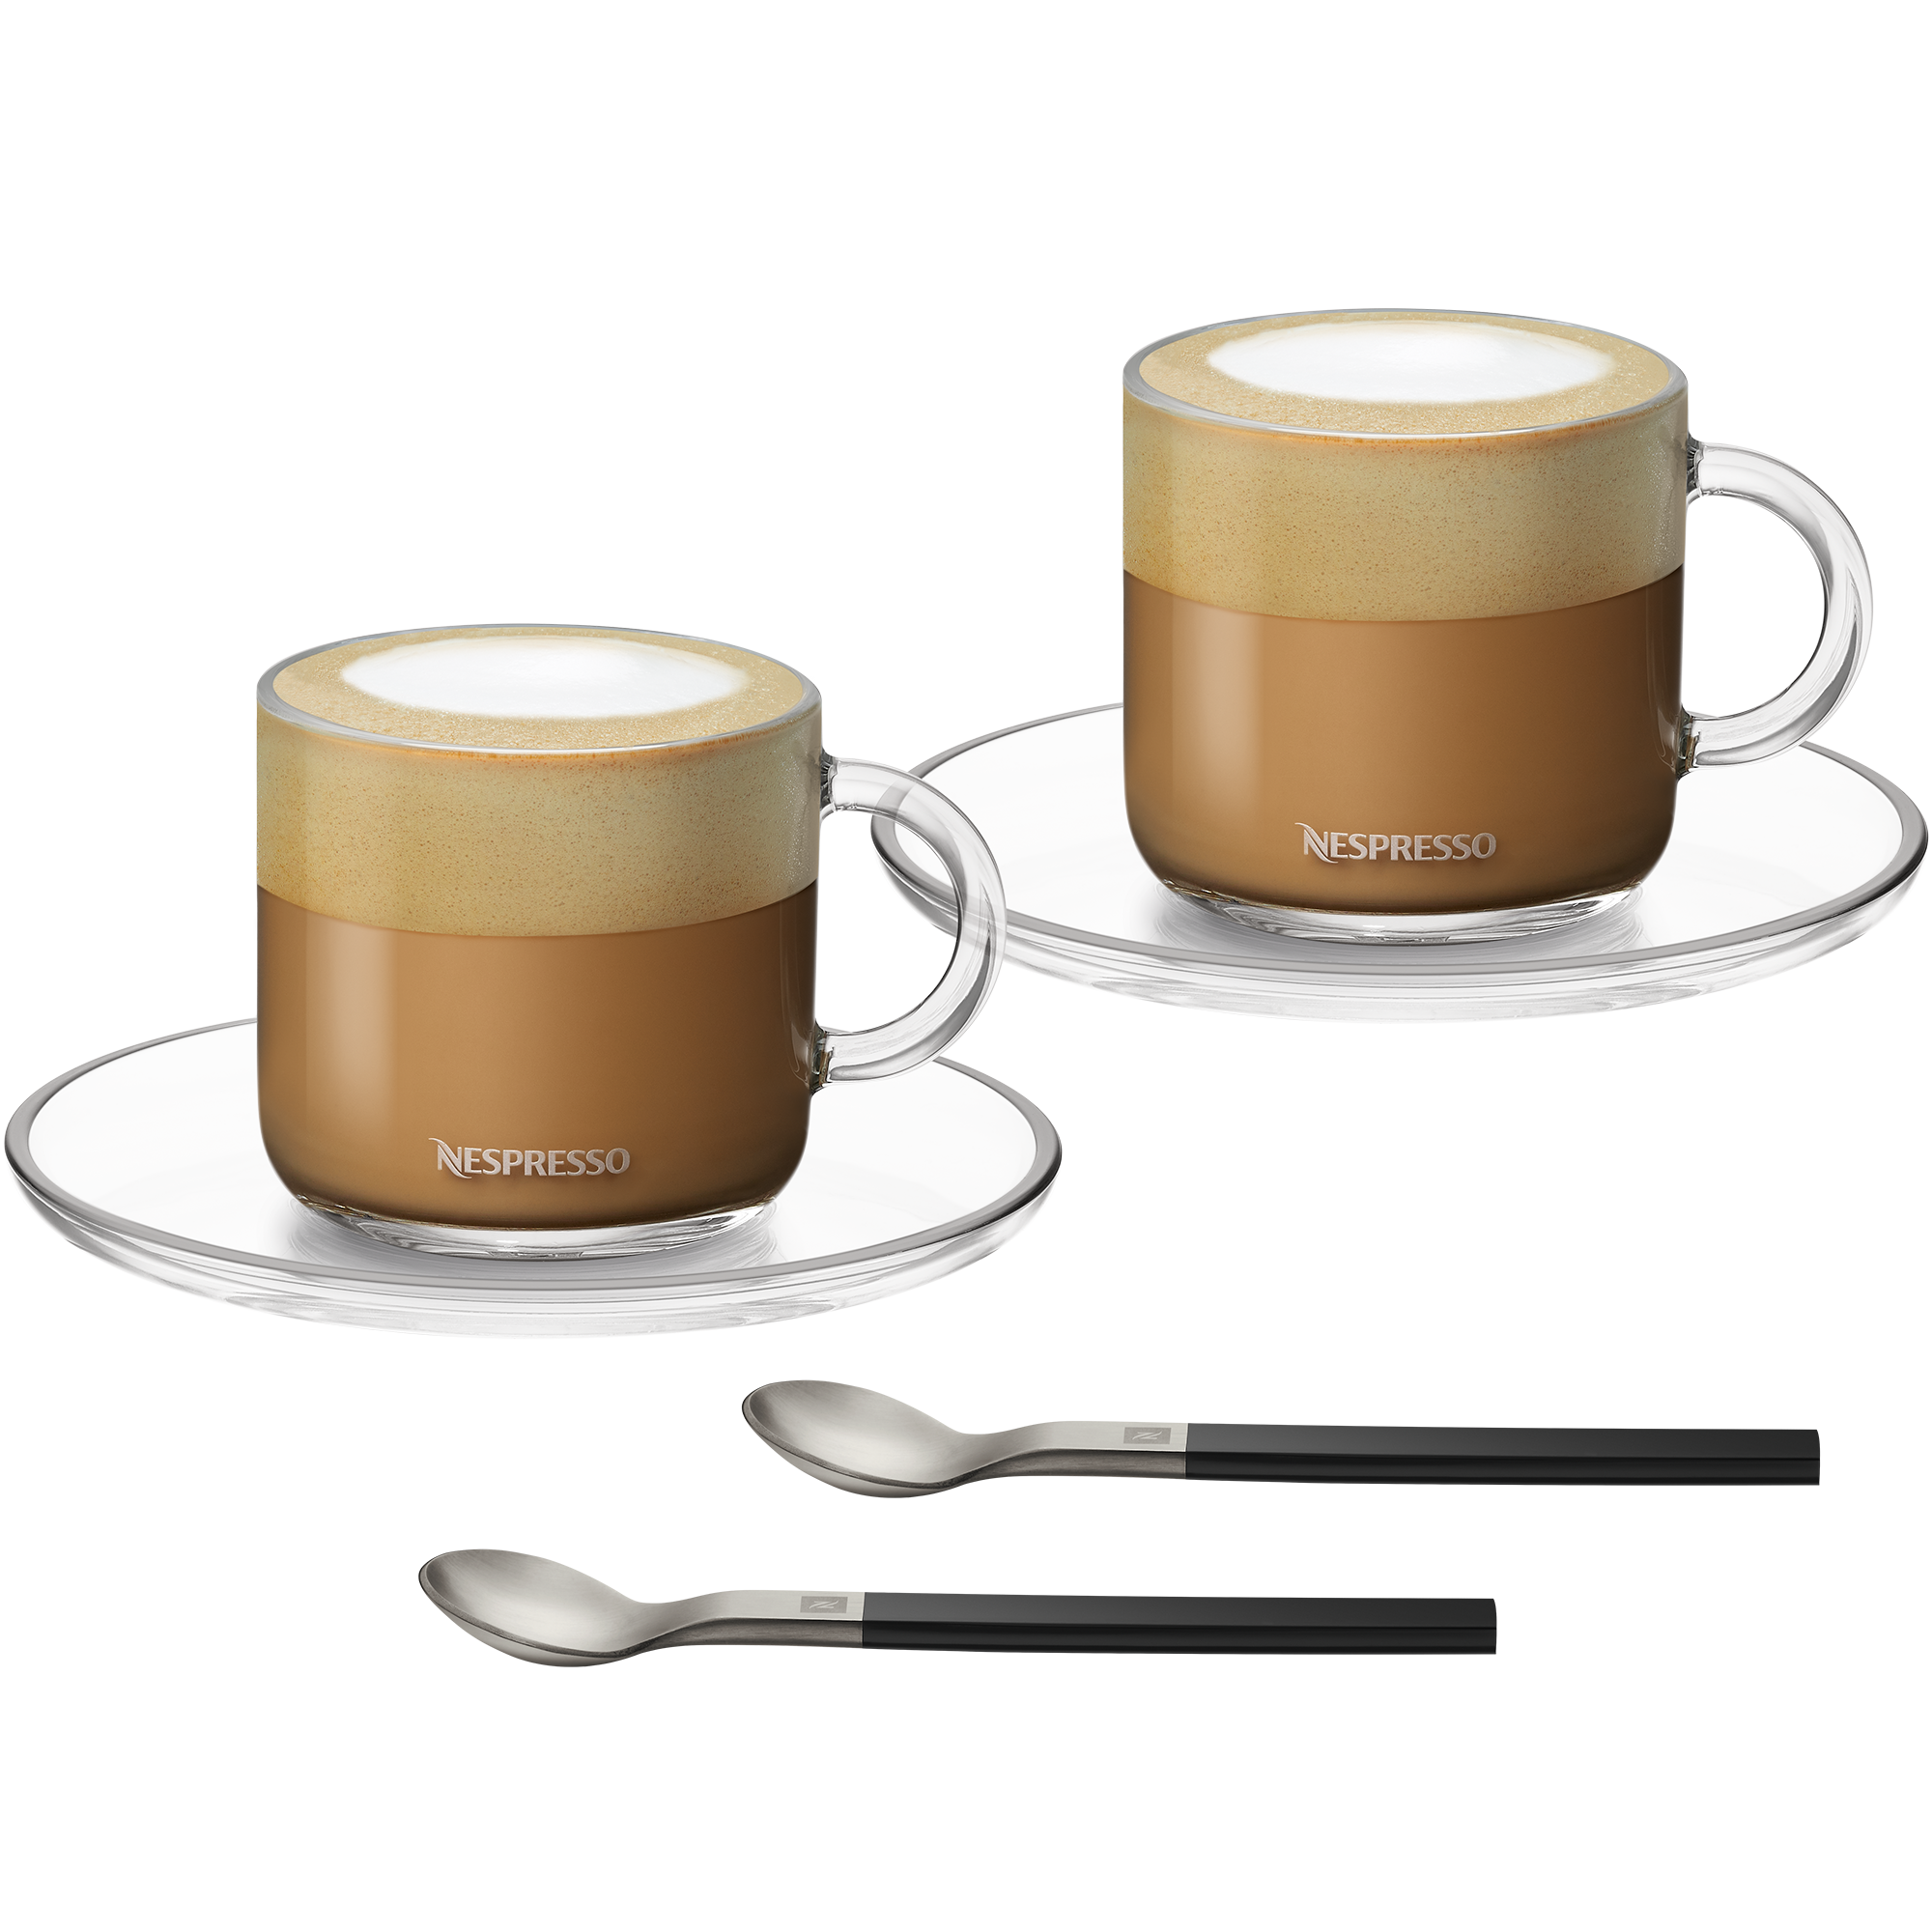 Nespresso Coffee Glass Cup & Saucers Set Espresso Cappuccino Set